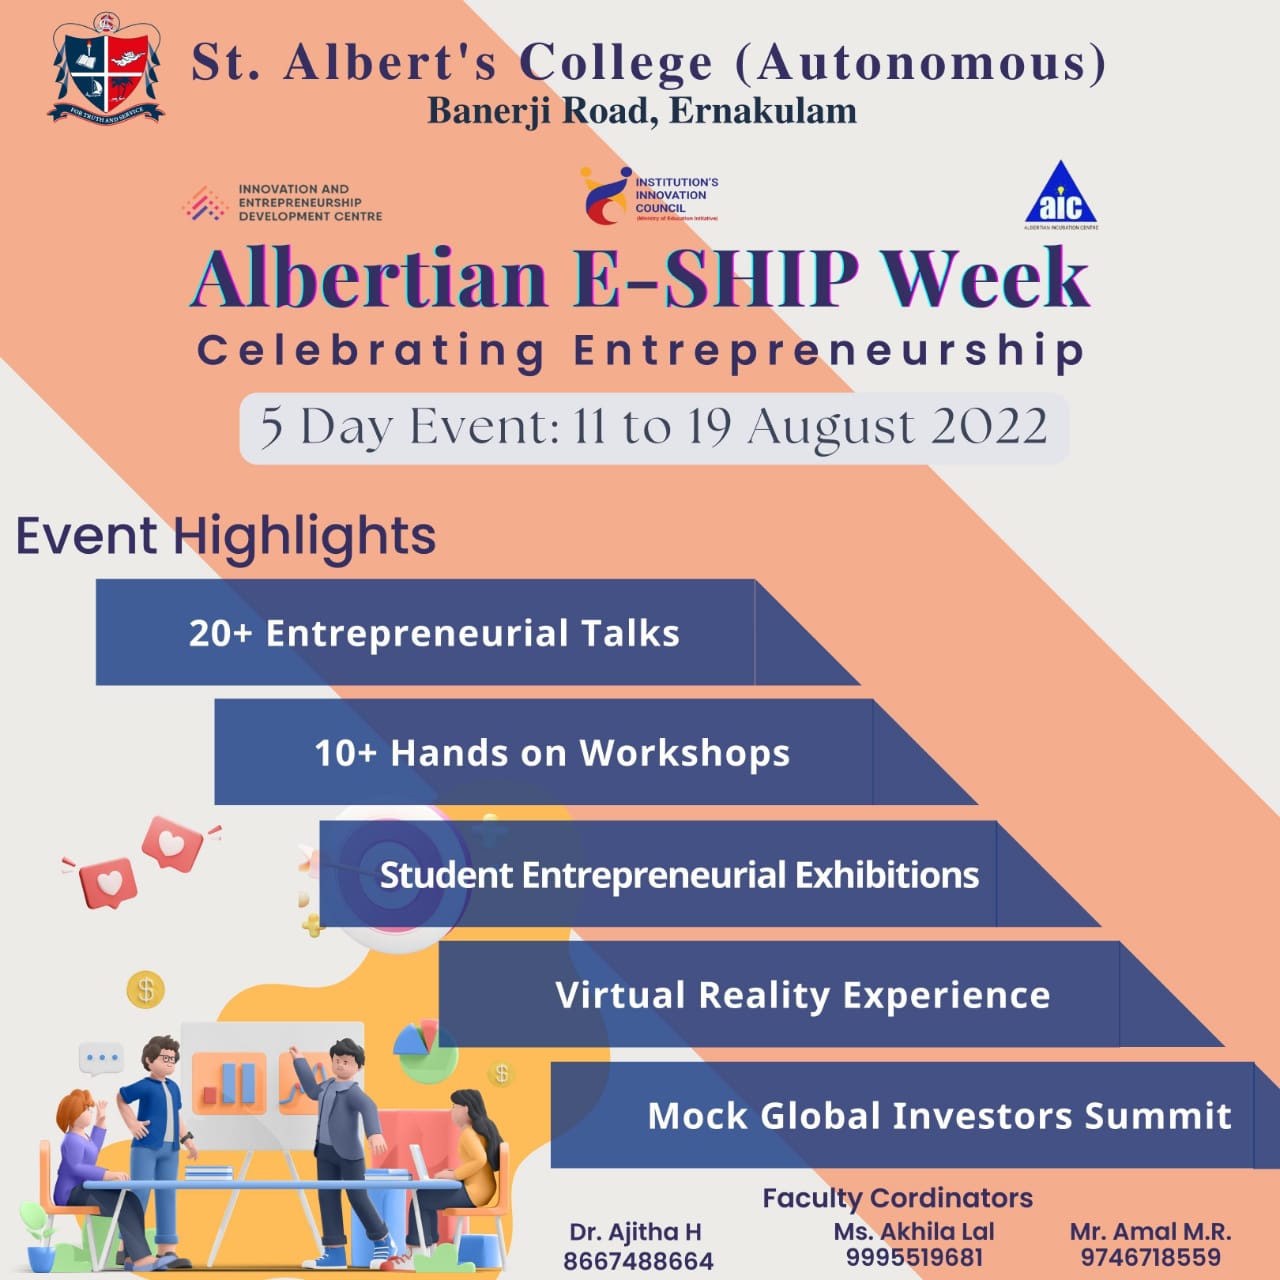 The Albertian E-Ship Week